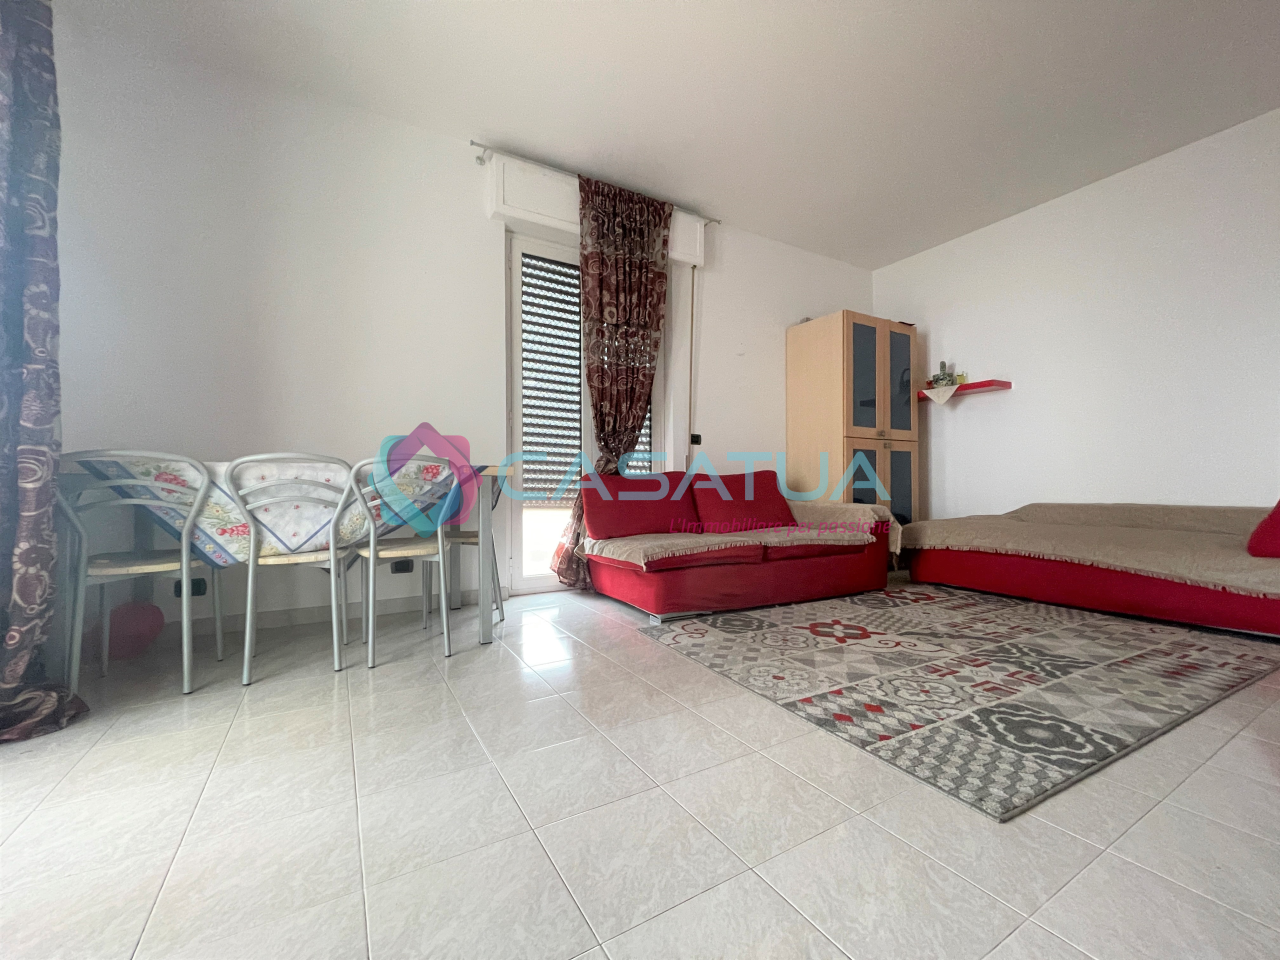 Appartamento in vendita a Alba Adriatica, 3 locali, prezzo € 160.000 | PortaleAgenzieImmobiliari.it